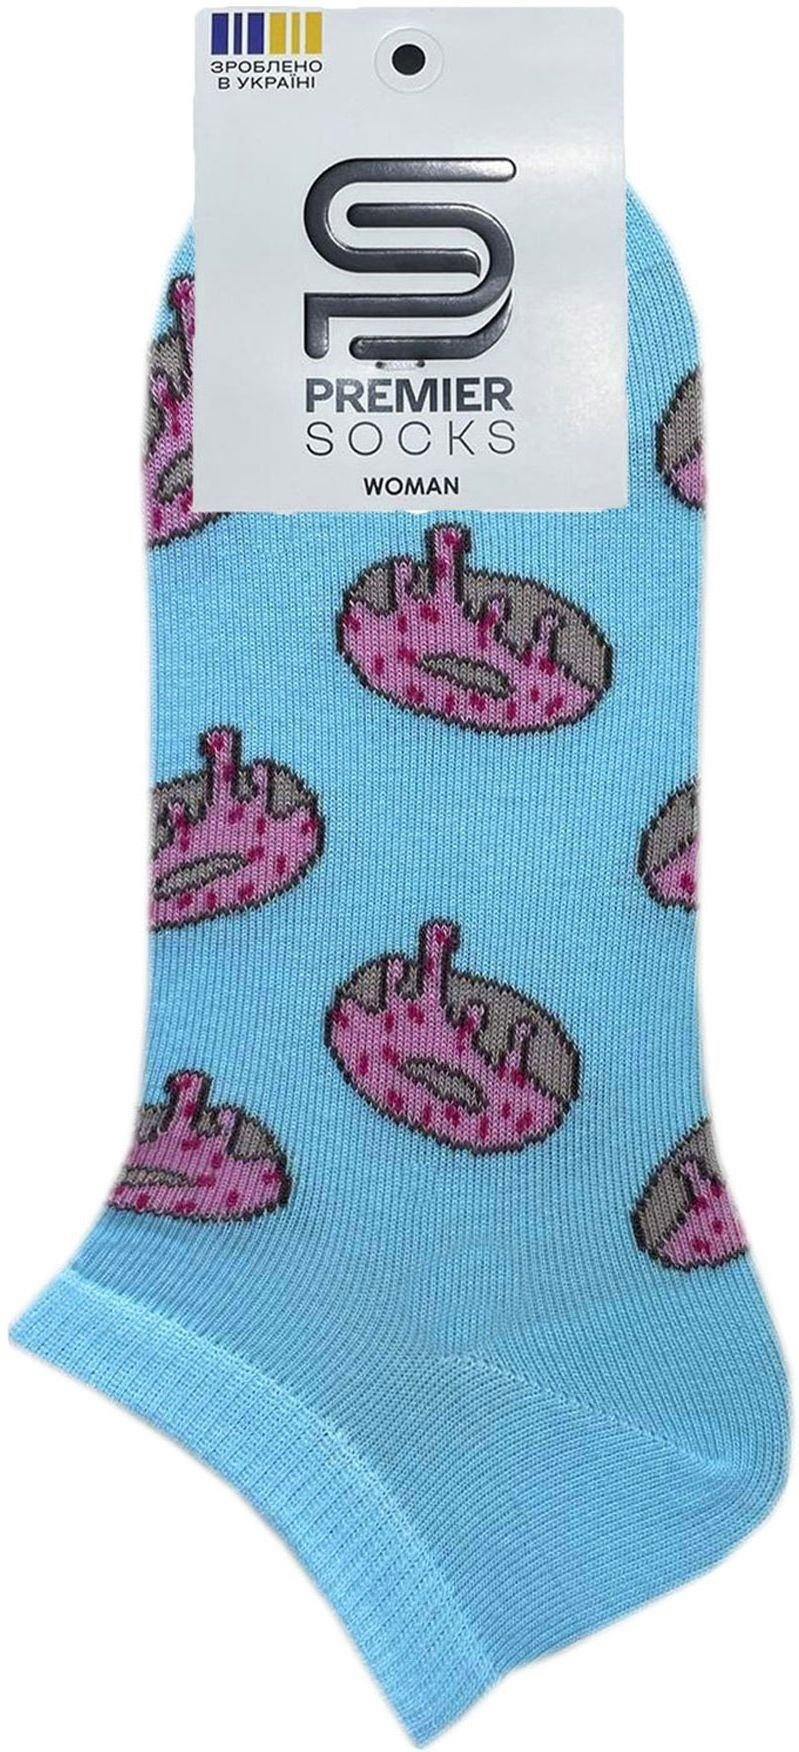 Носки женские Premier Socks 36-40 1 пара голубые с принтом Пончики (4820163318905)фото2